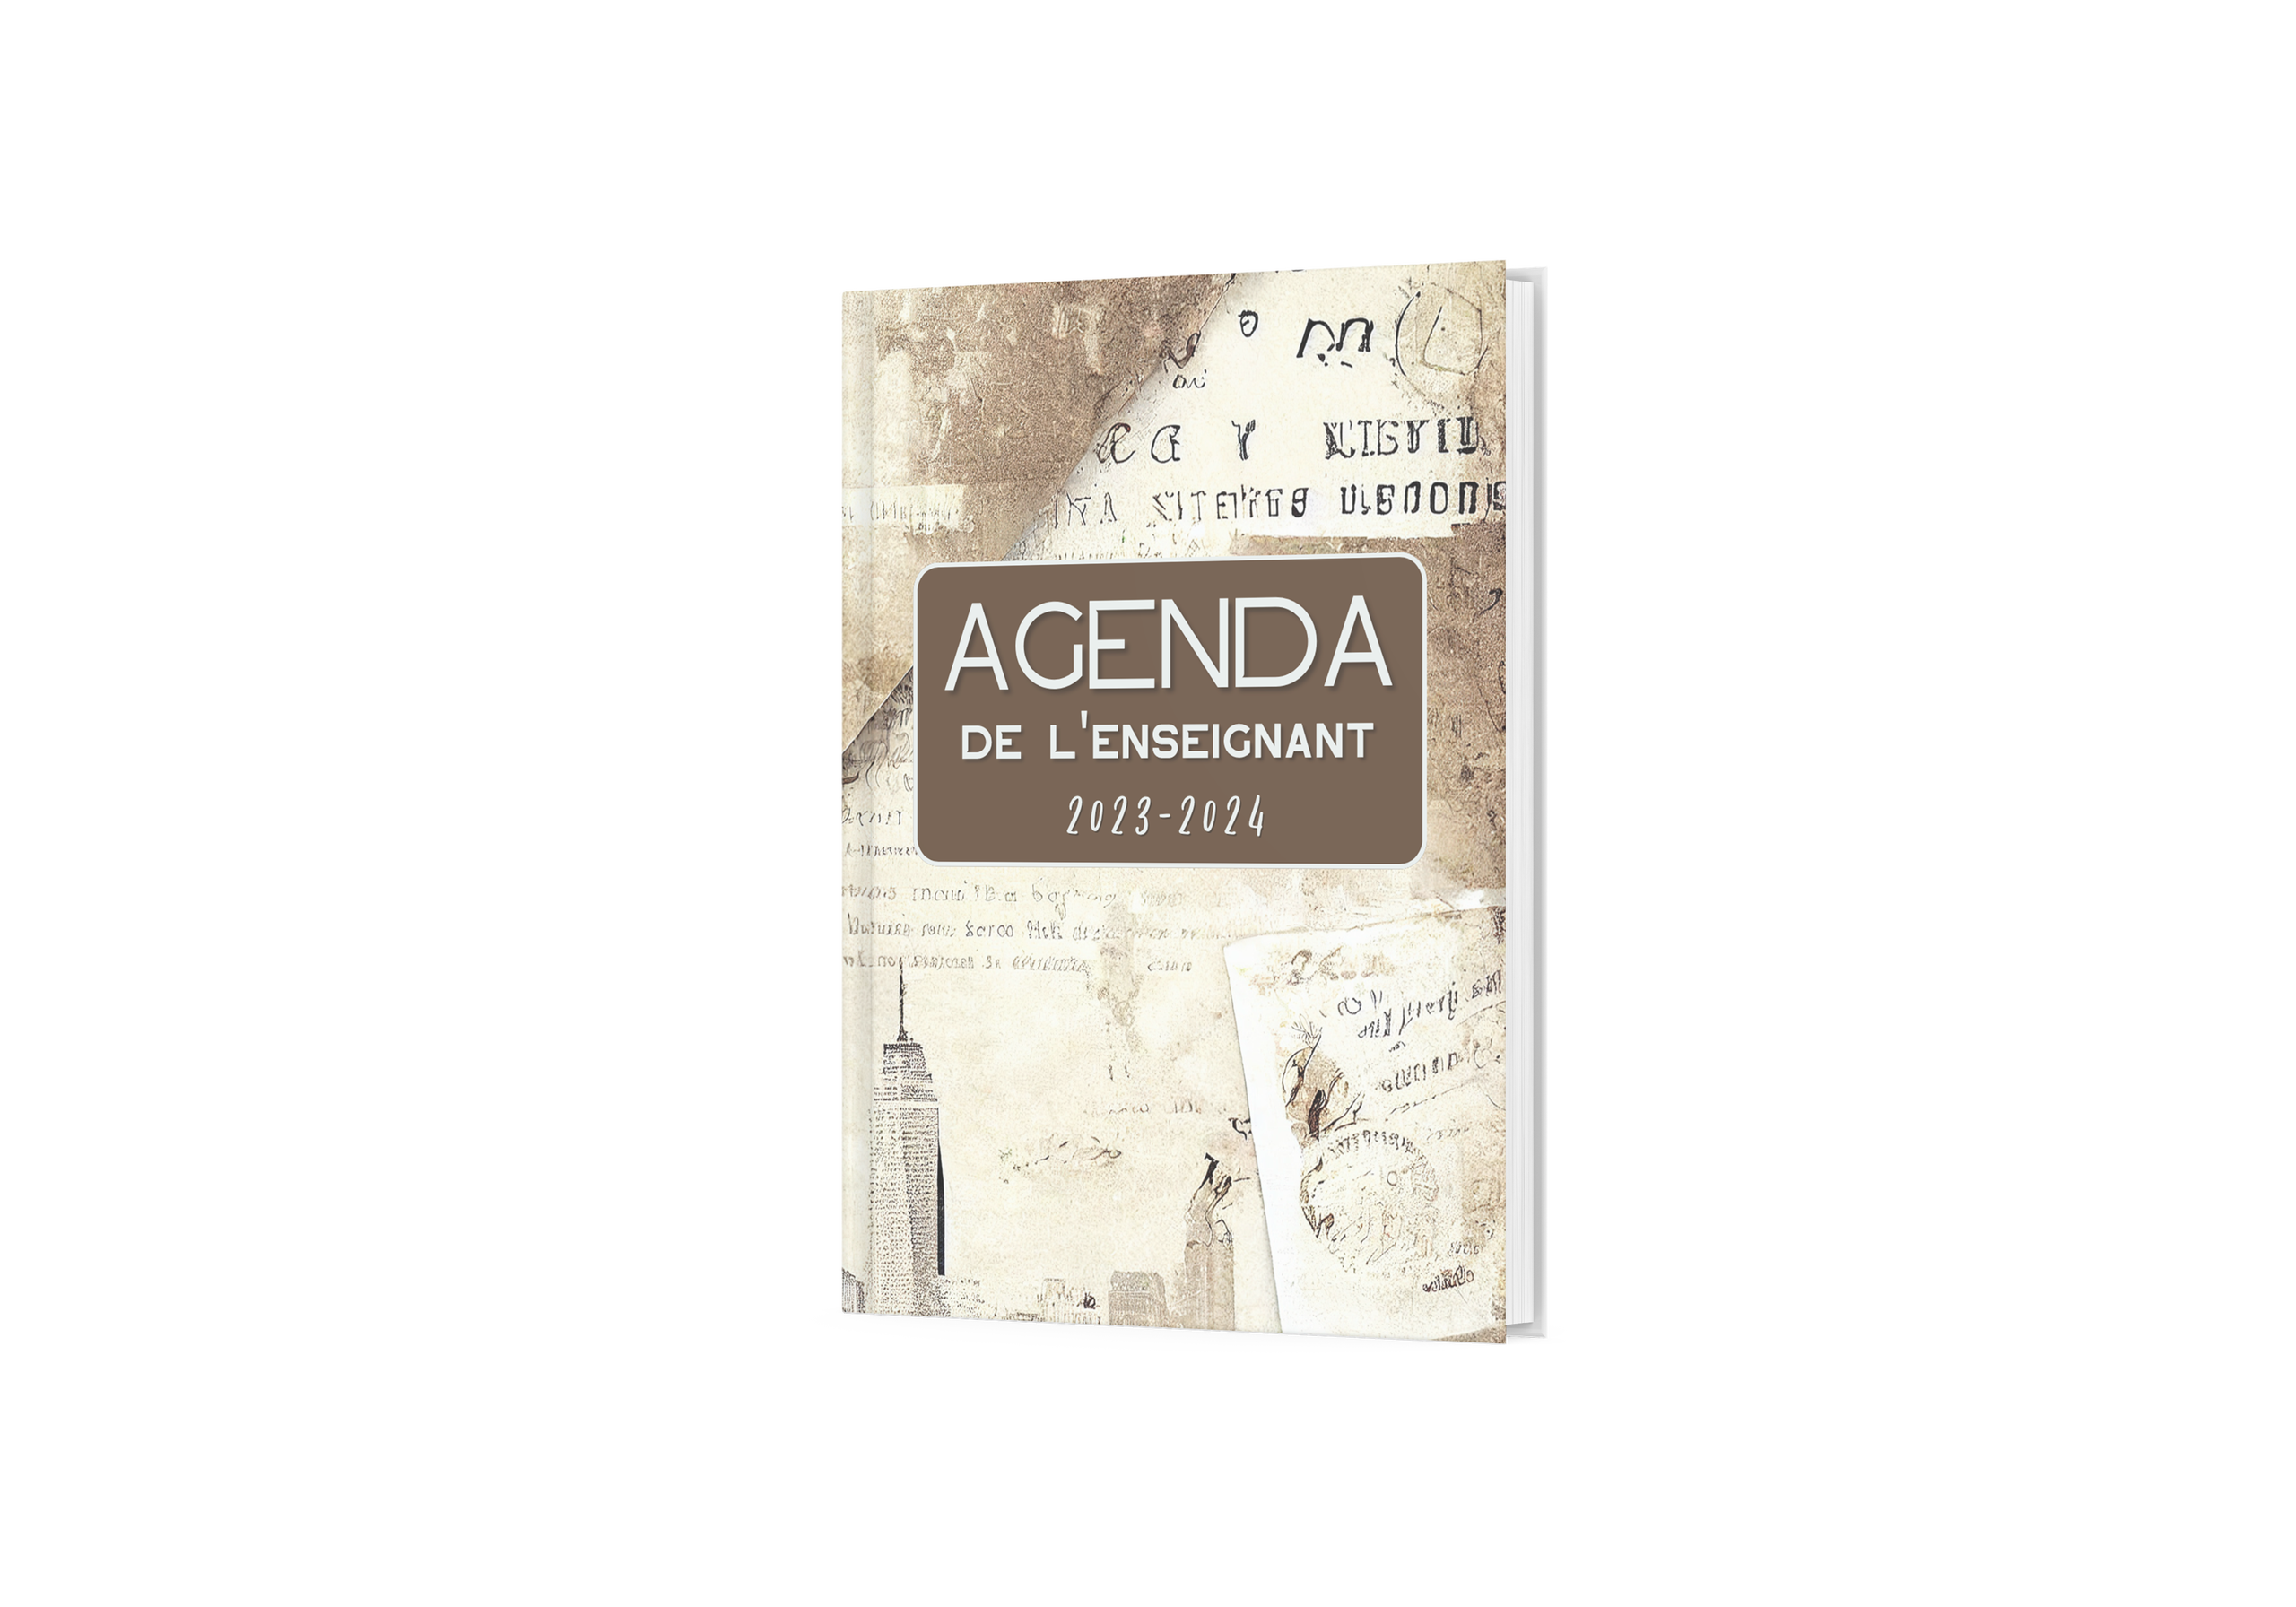 2023-2024 Agenda Semainier: agenda 2023 2024 semainier a4 / agenda 2023  2024 semainier / agenda 2023 2024 semainier pour papa et maman / agenda  2023